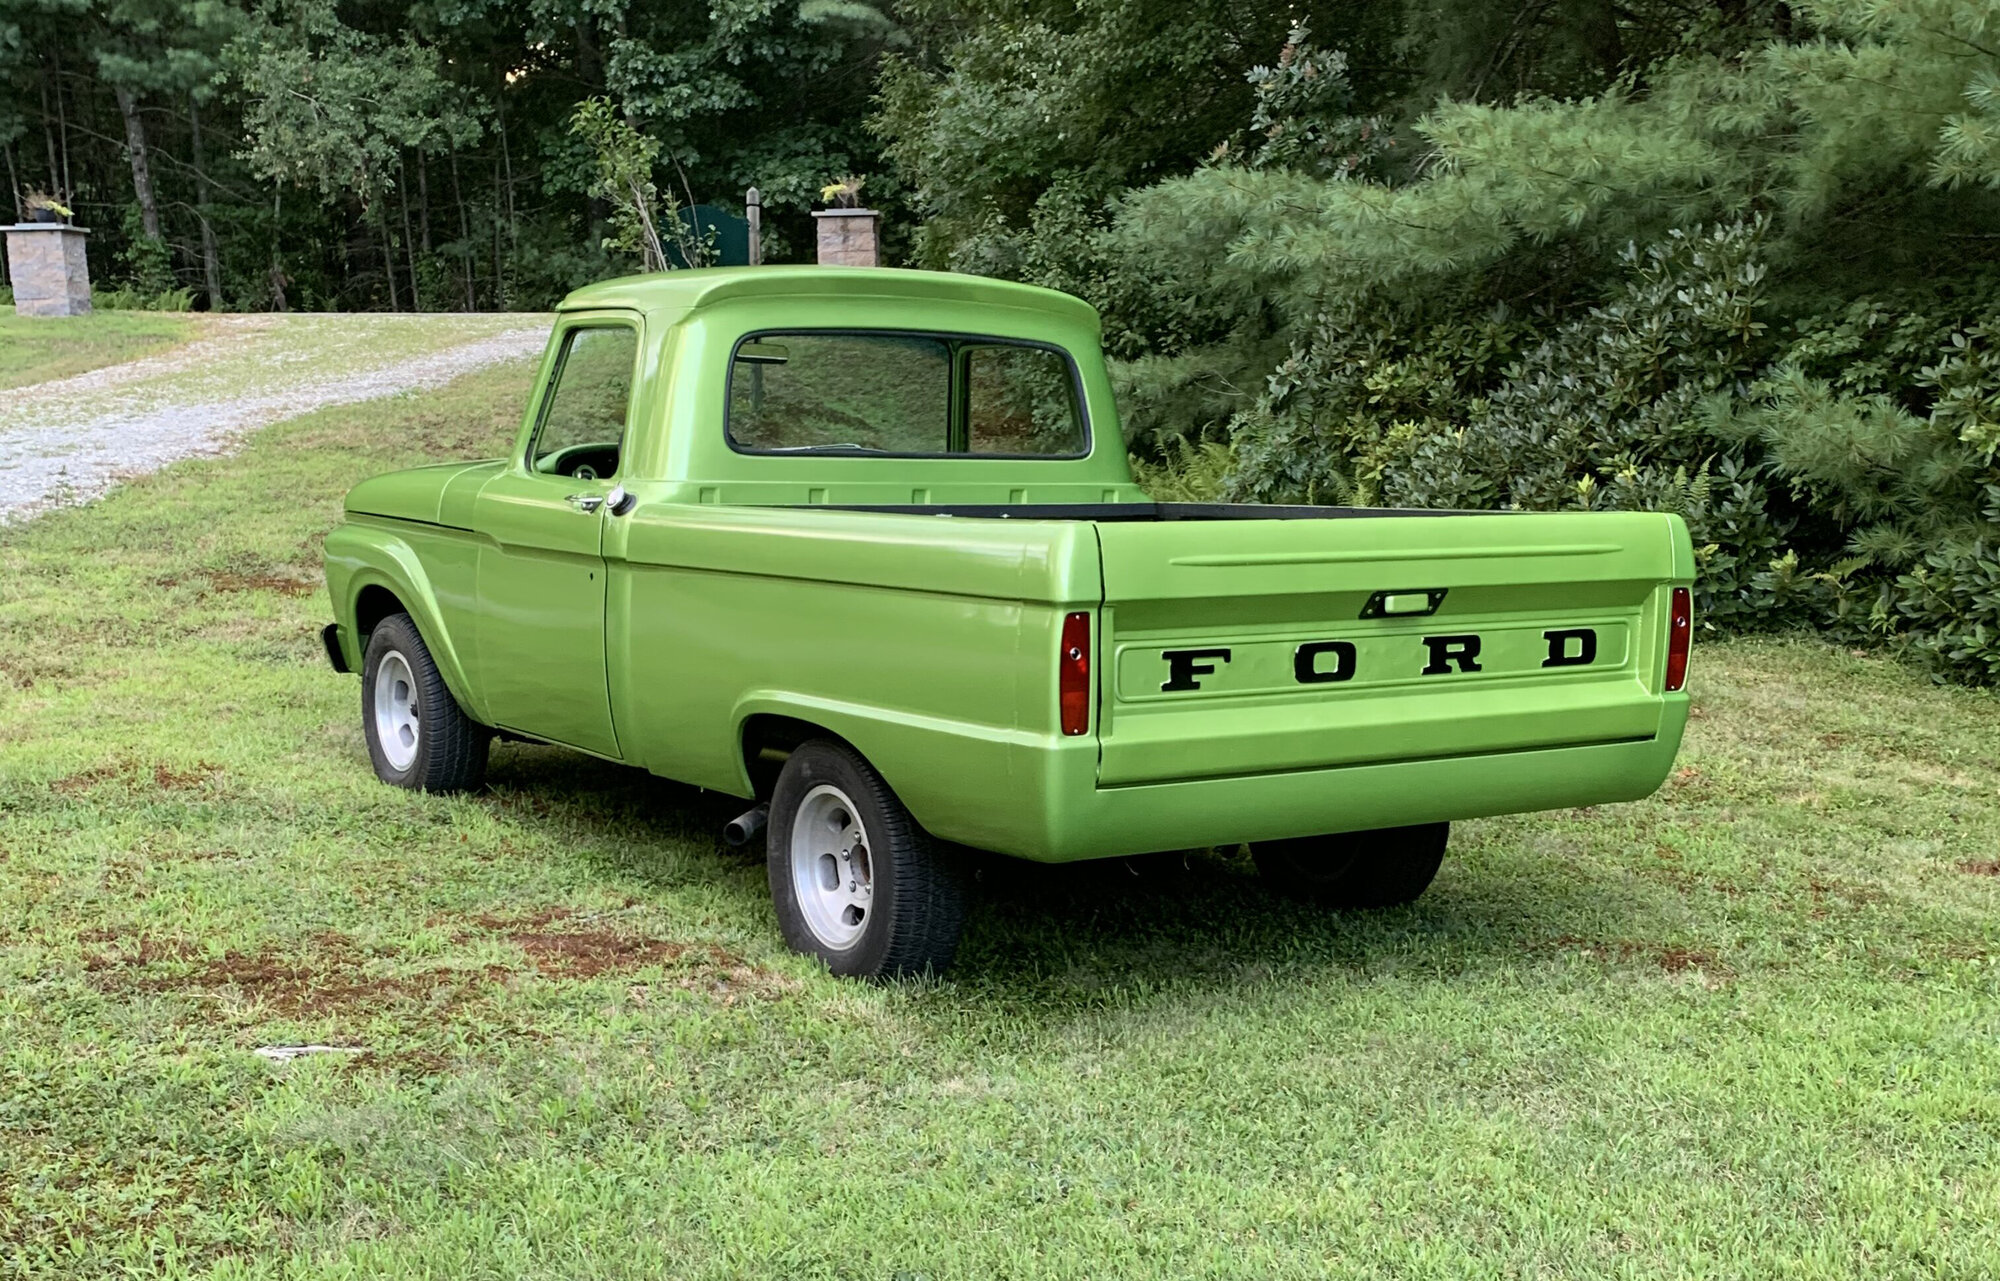 1966 Ford F100 - 1966 F100 Street Truck -  Ford Truck Profile